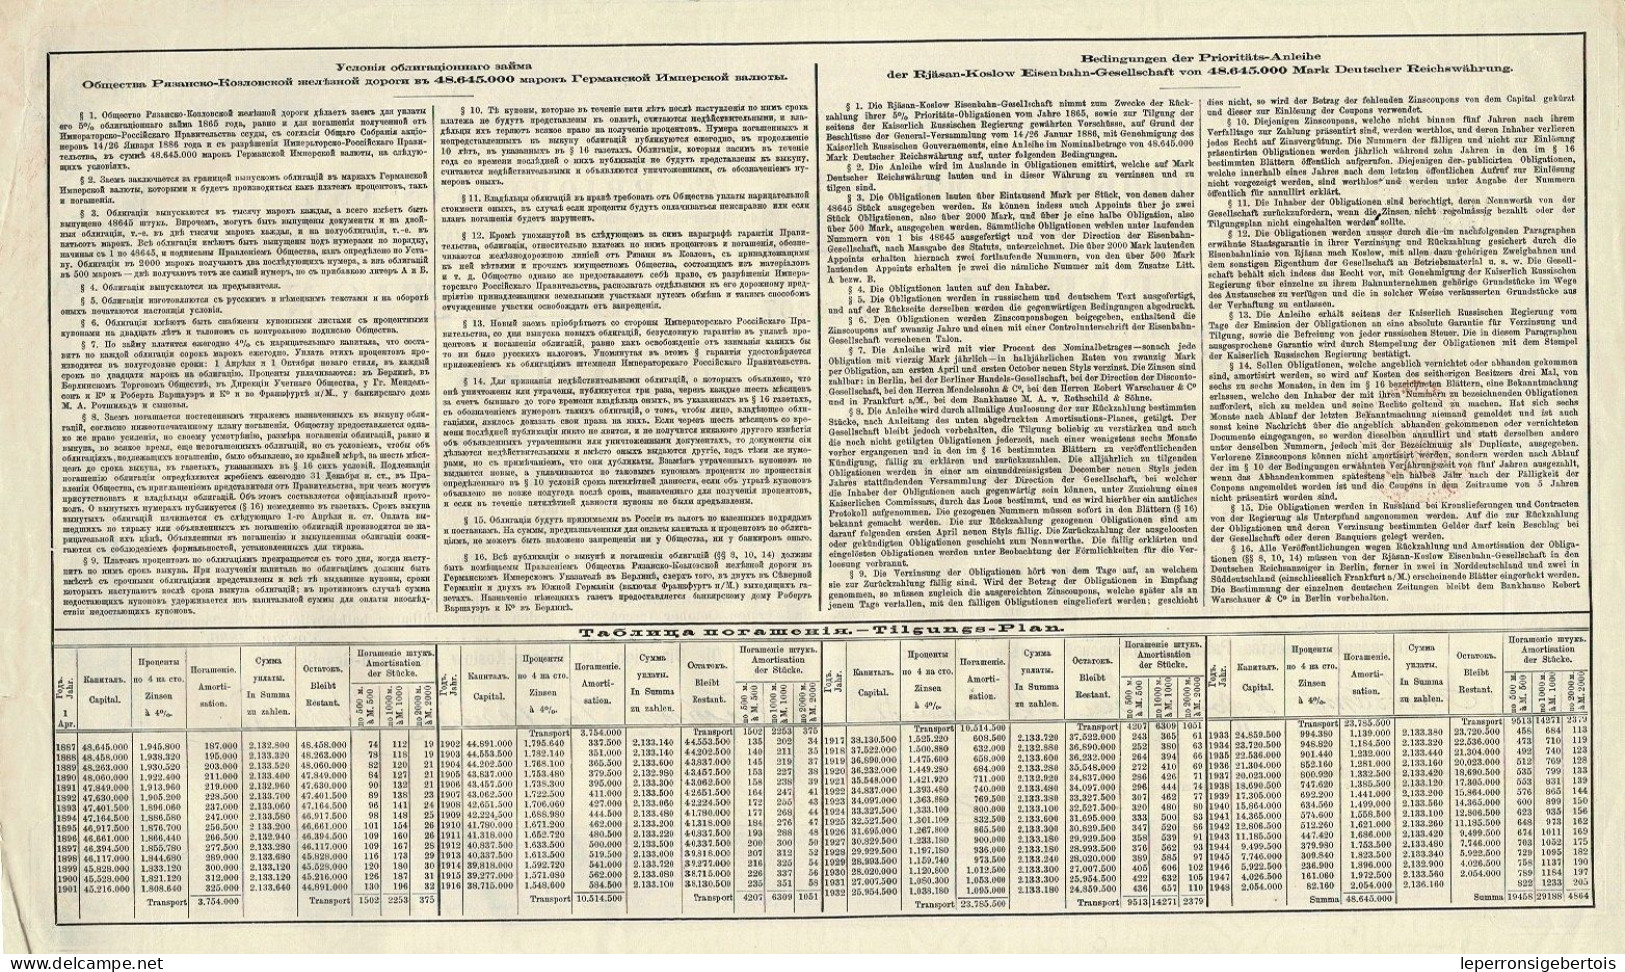 Obligation De 1886 - Obligation Mark Der Rjäsan-Koslow - Eisenbahn - Russie